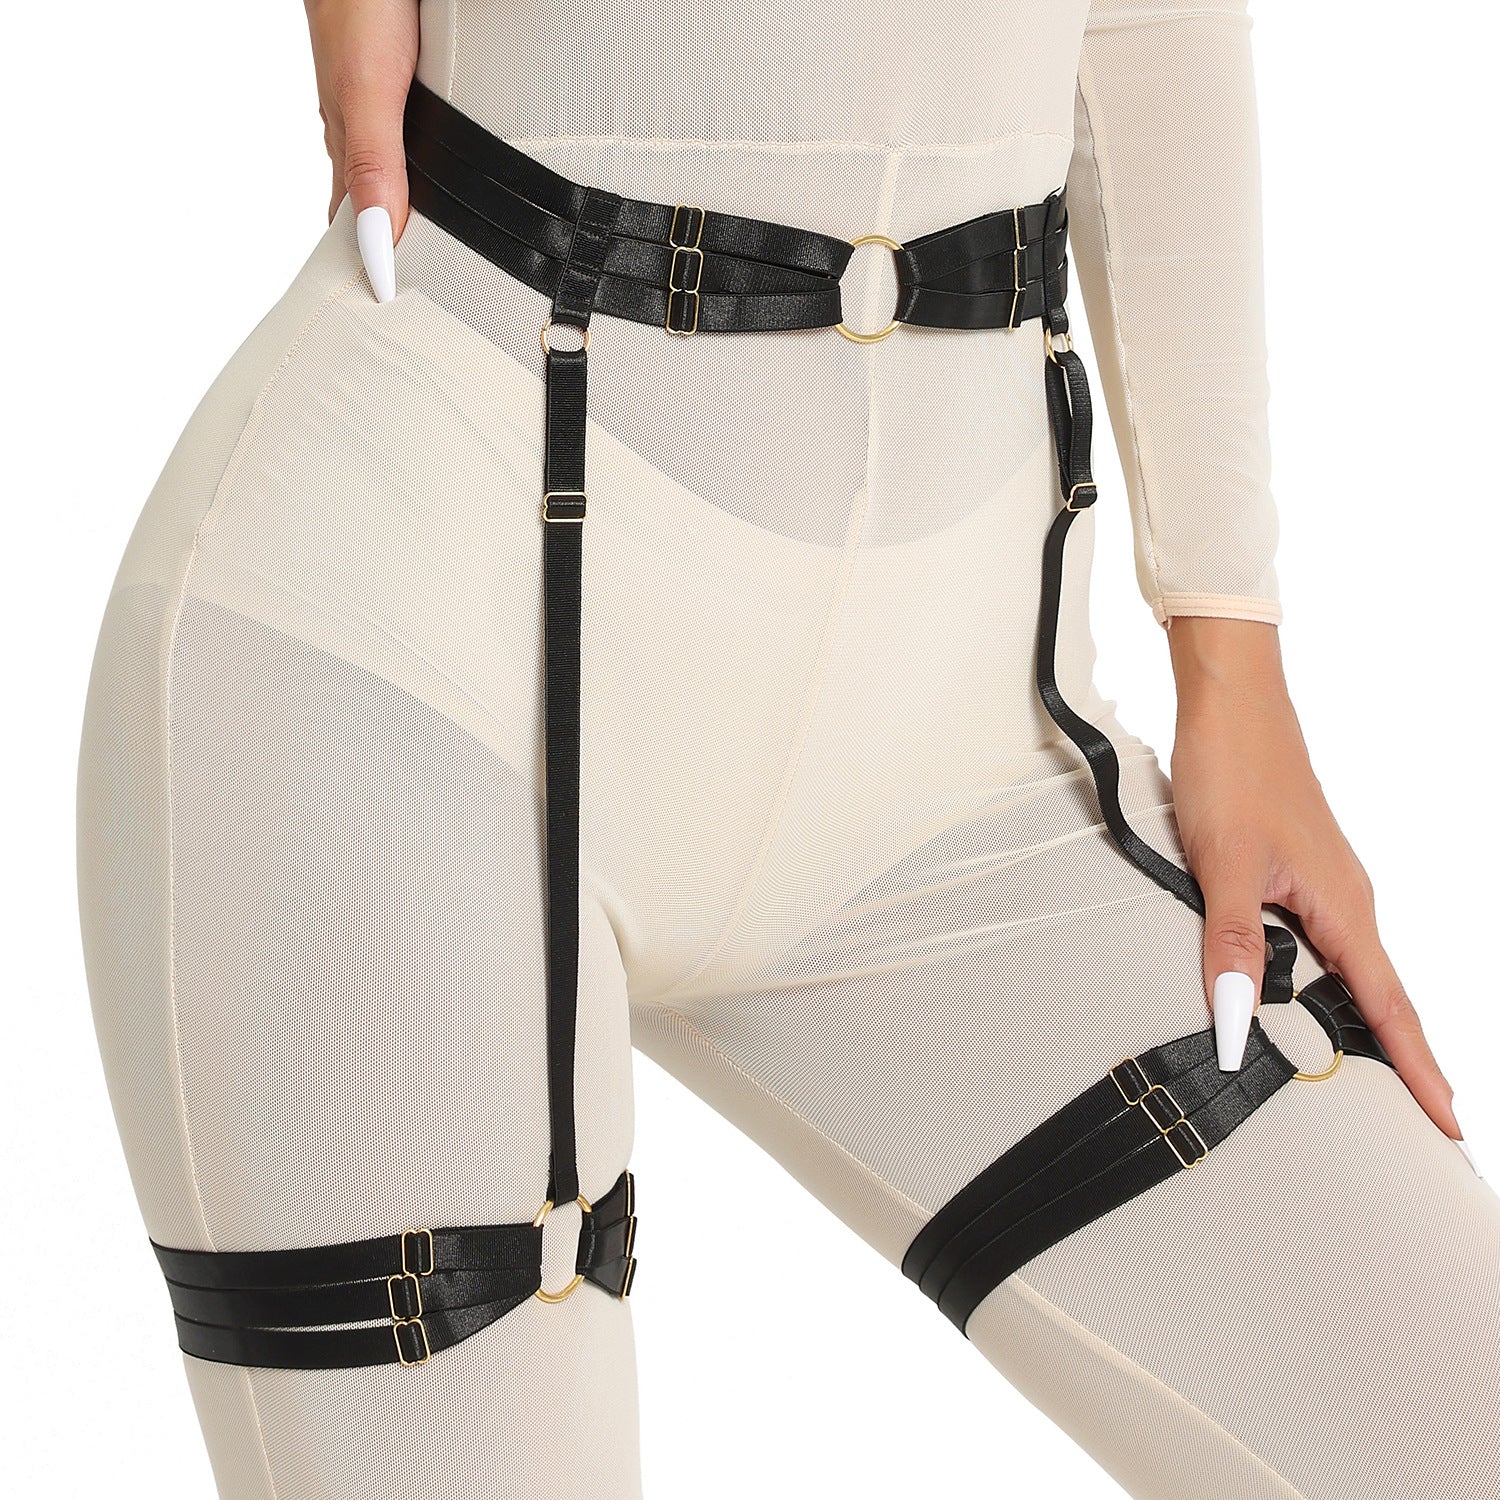 White Lingerie With Garter Belt Extreme Black Body Harness Lingerie